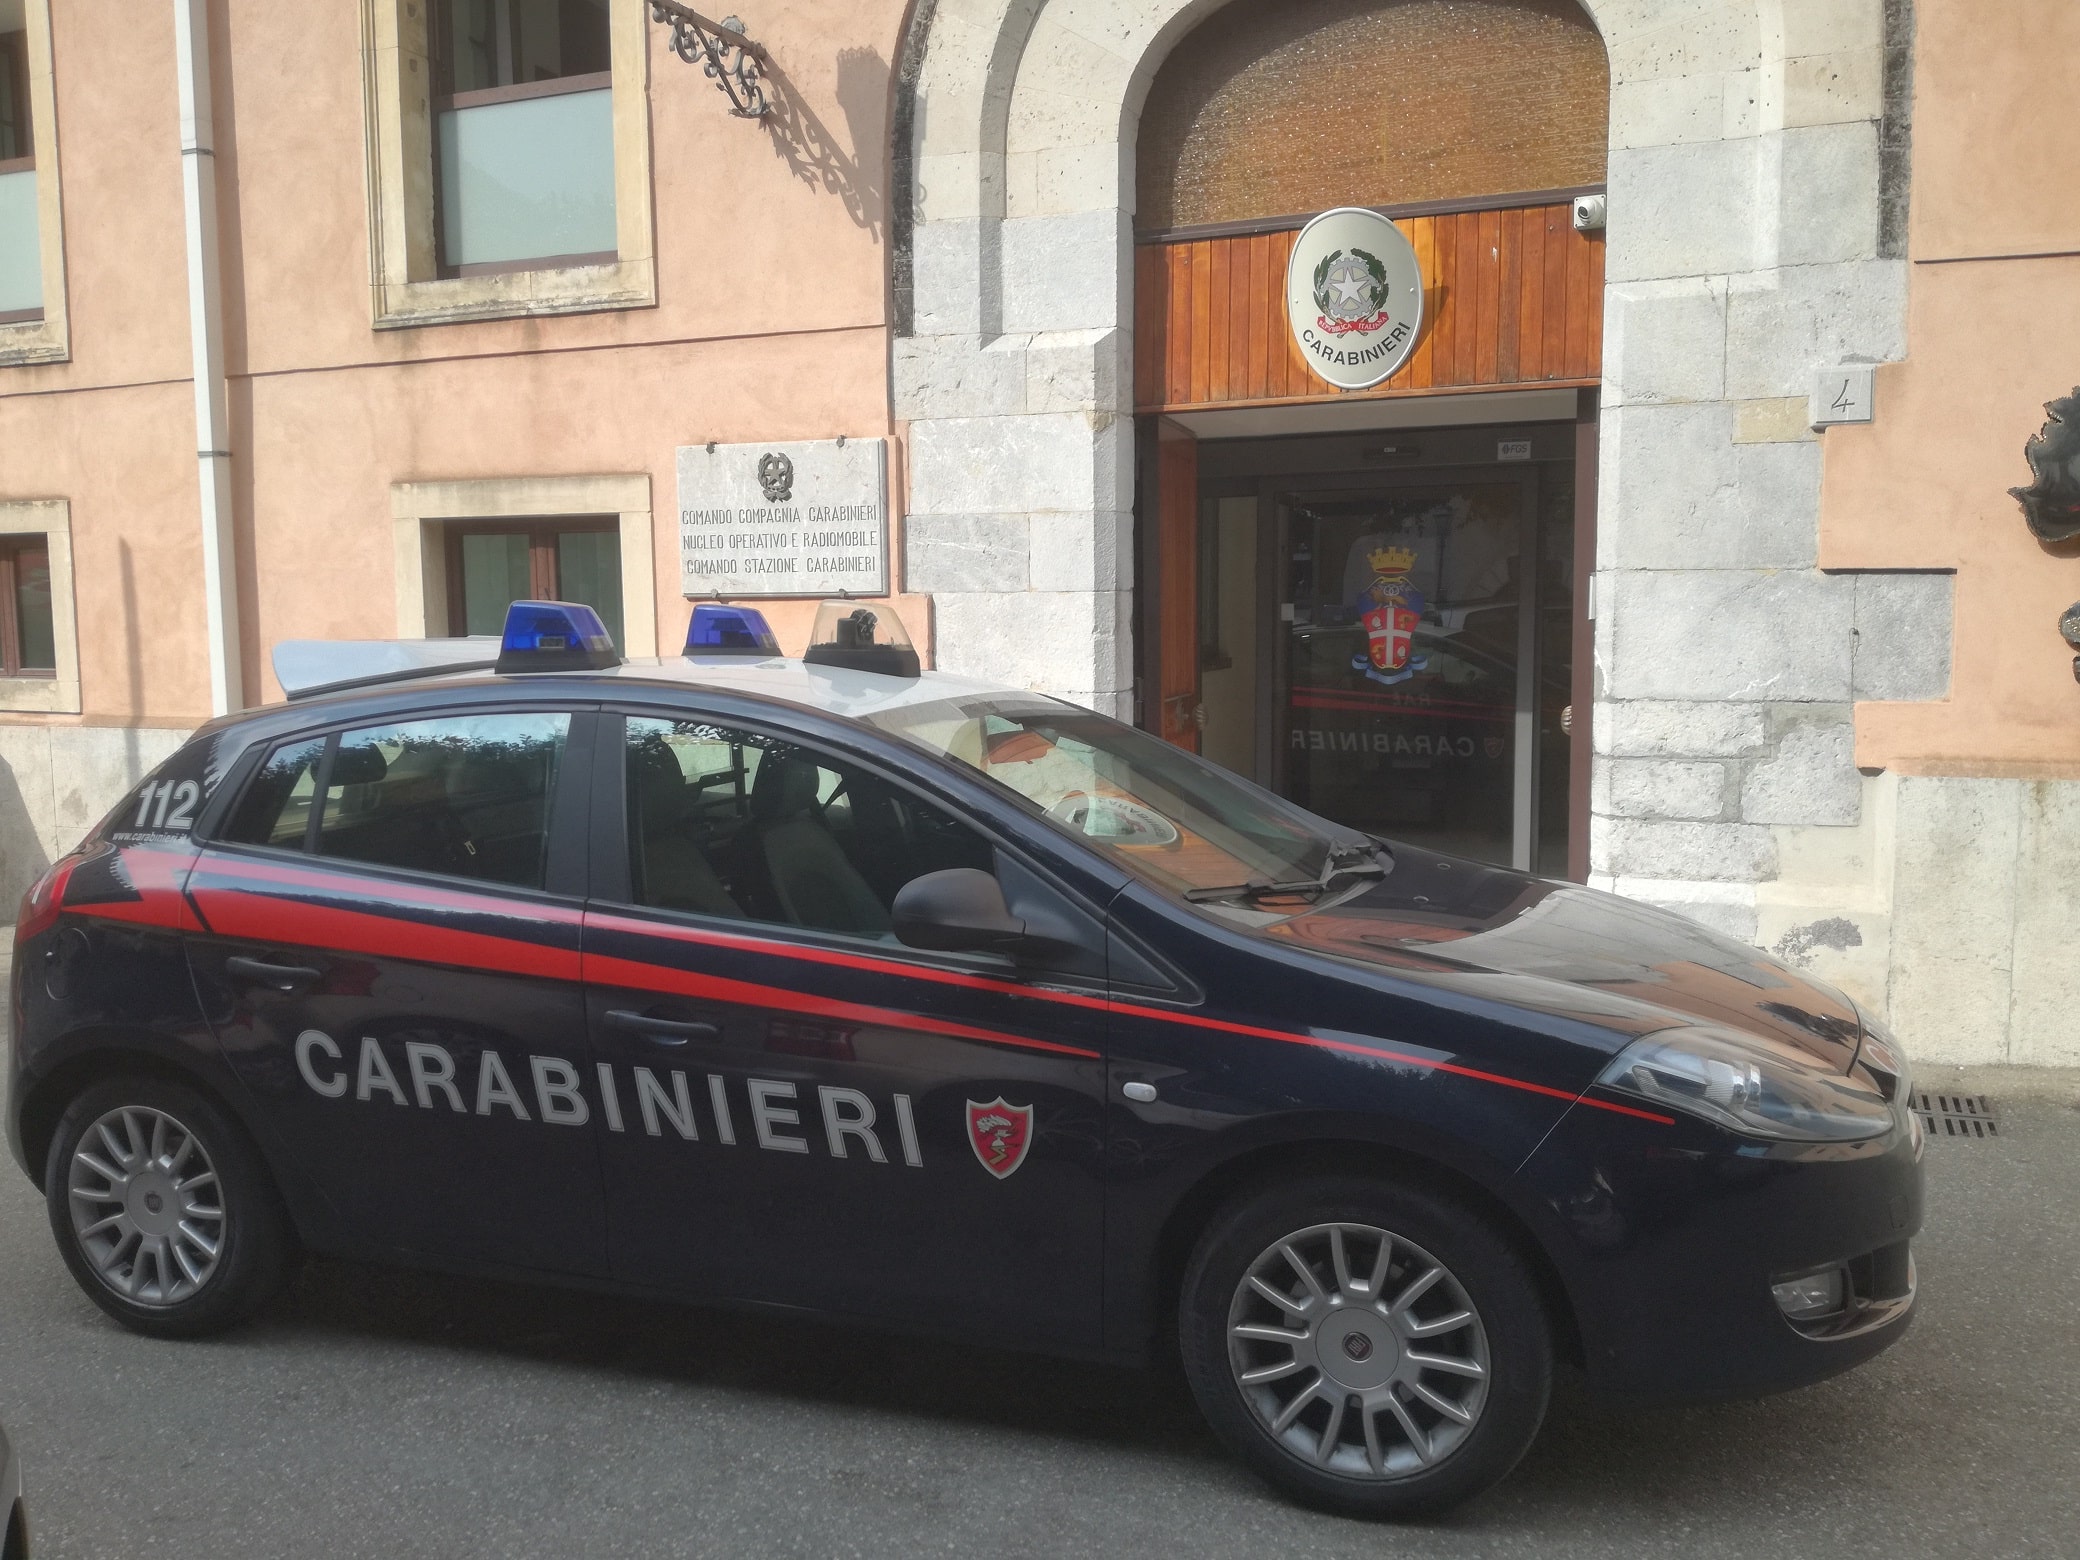 Fori di colpi d’arma da fuoco su un cancello insospettiscono i carabinieri: arrestato 46enne per detenzione illegale di arma clandestina